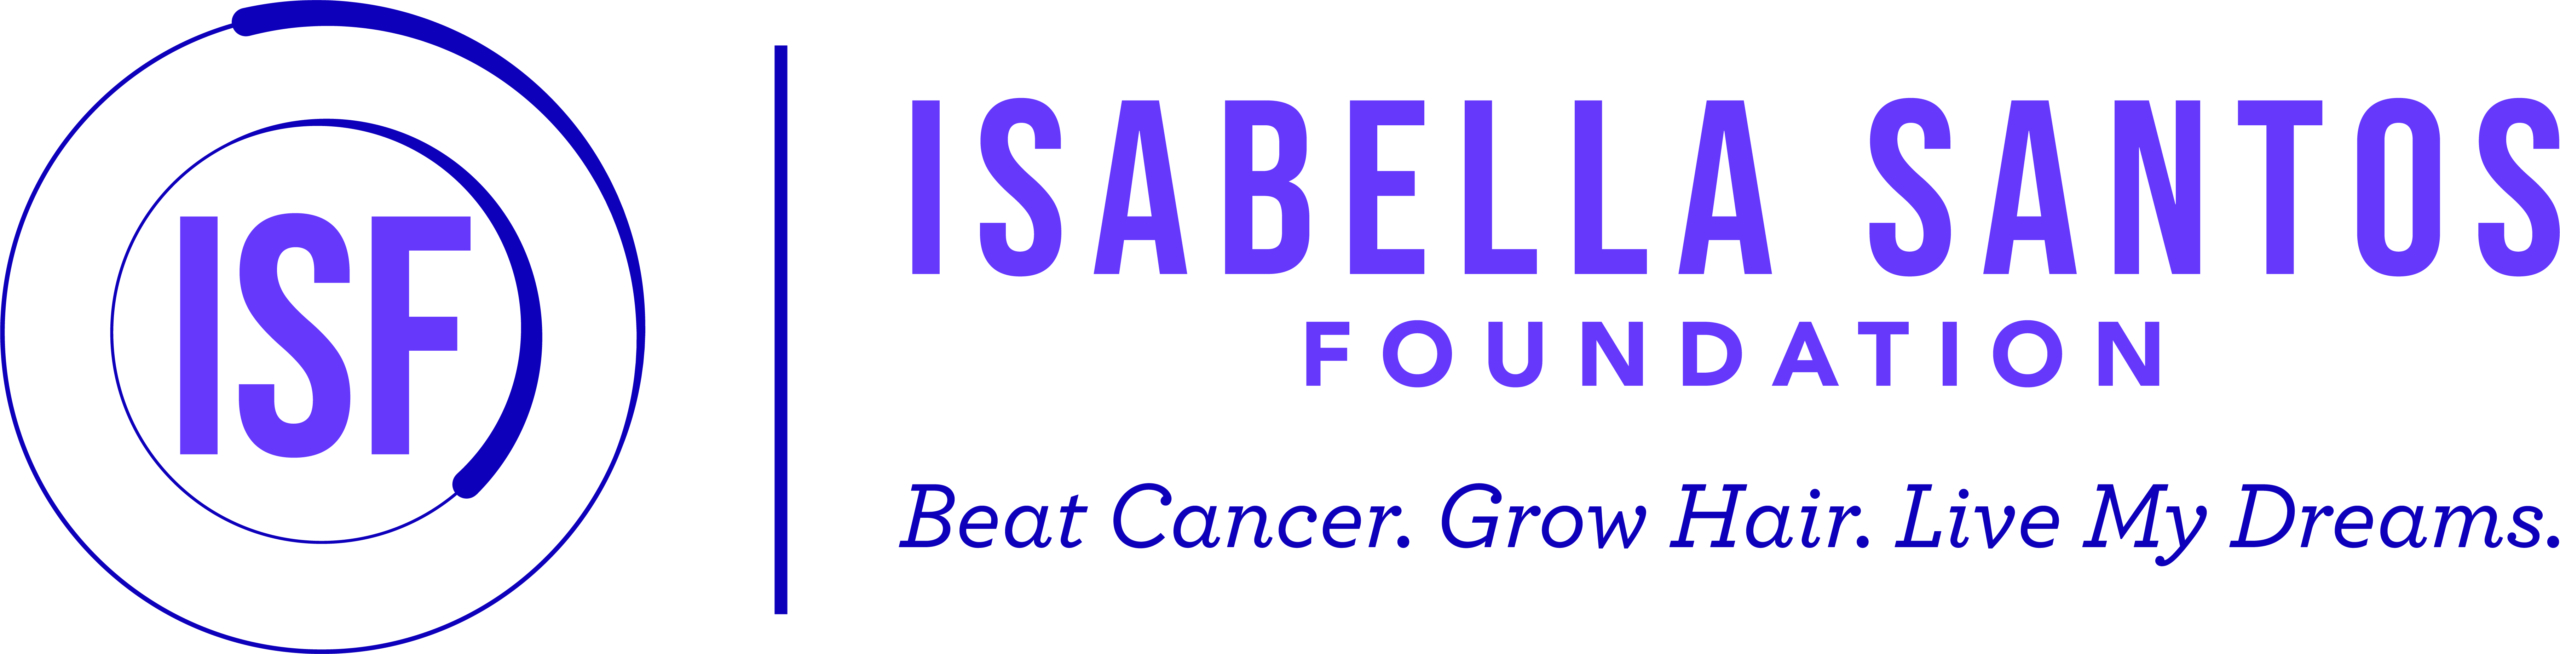 Isabella Santos Foundation